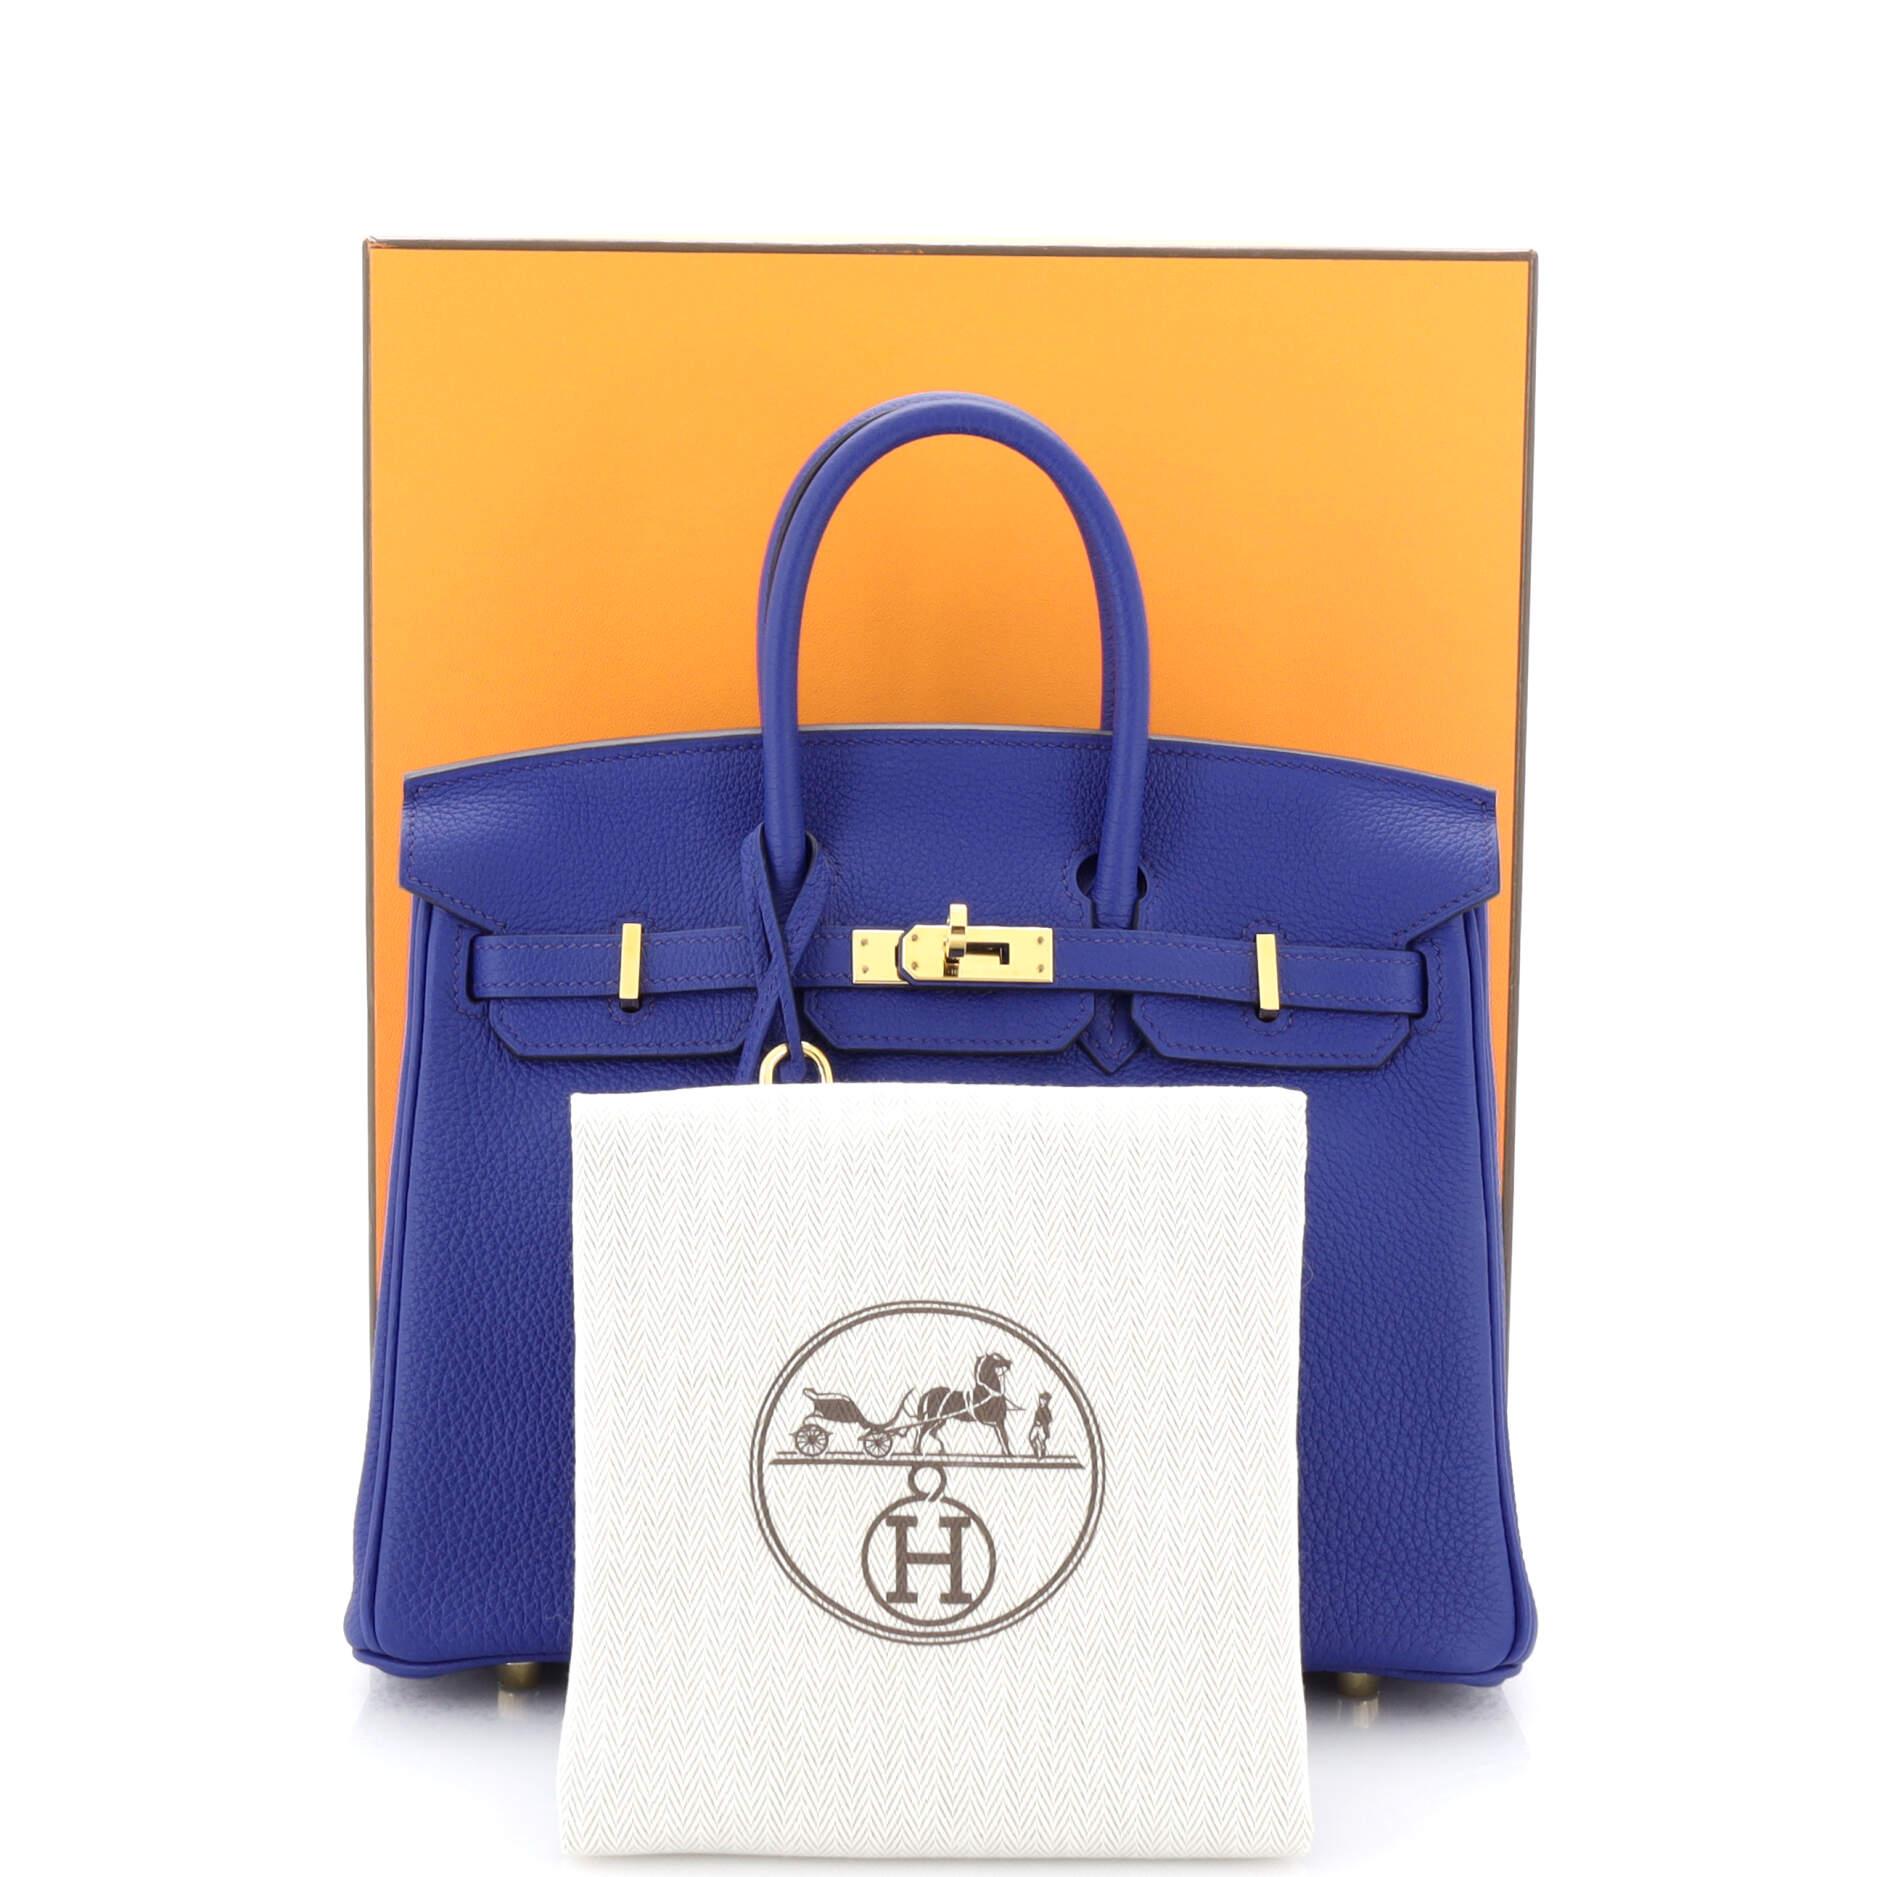 Royal Blue Hermes Birkin Bag - For Sale on 1stDibs  hermes birkin royal  blue, royal blue birkin bag, royal blue hermes bag